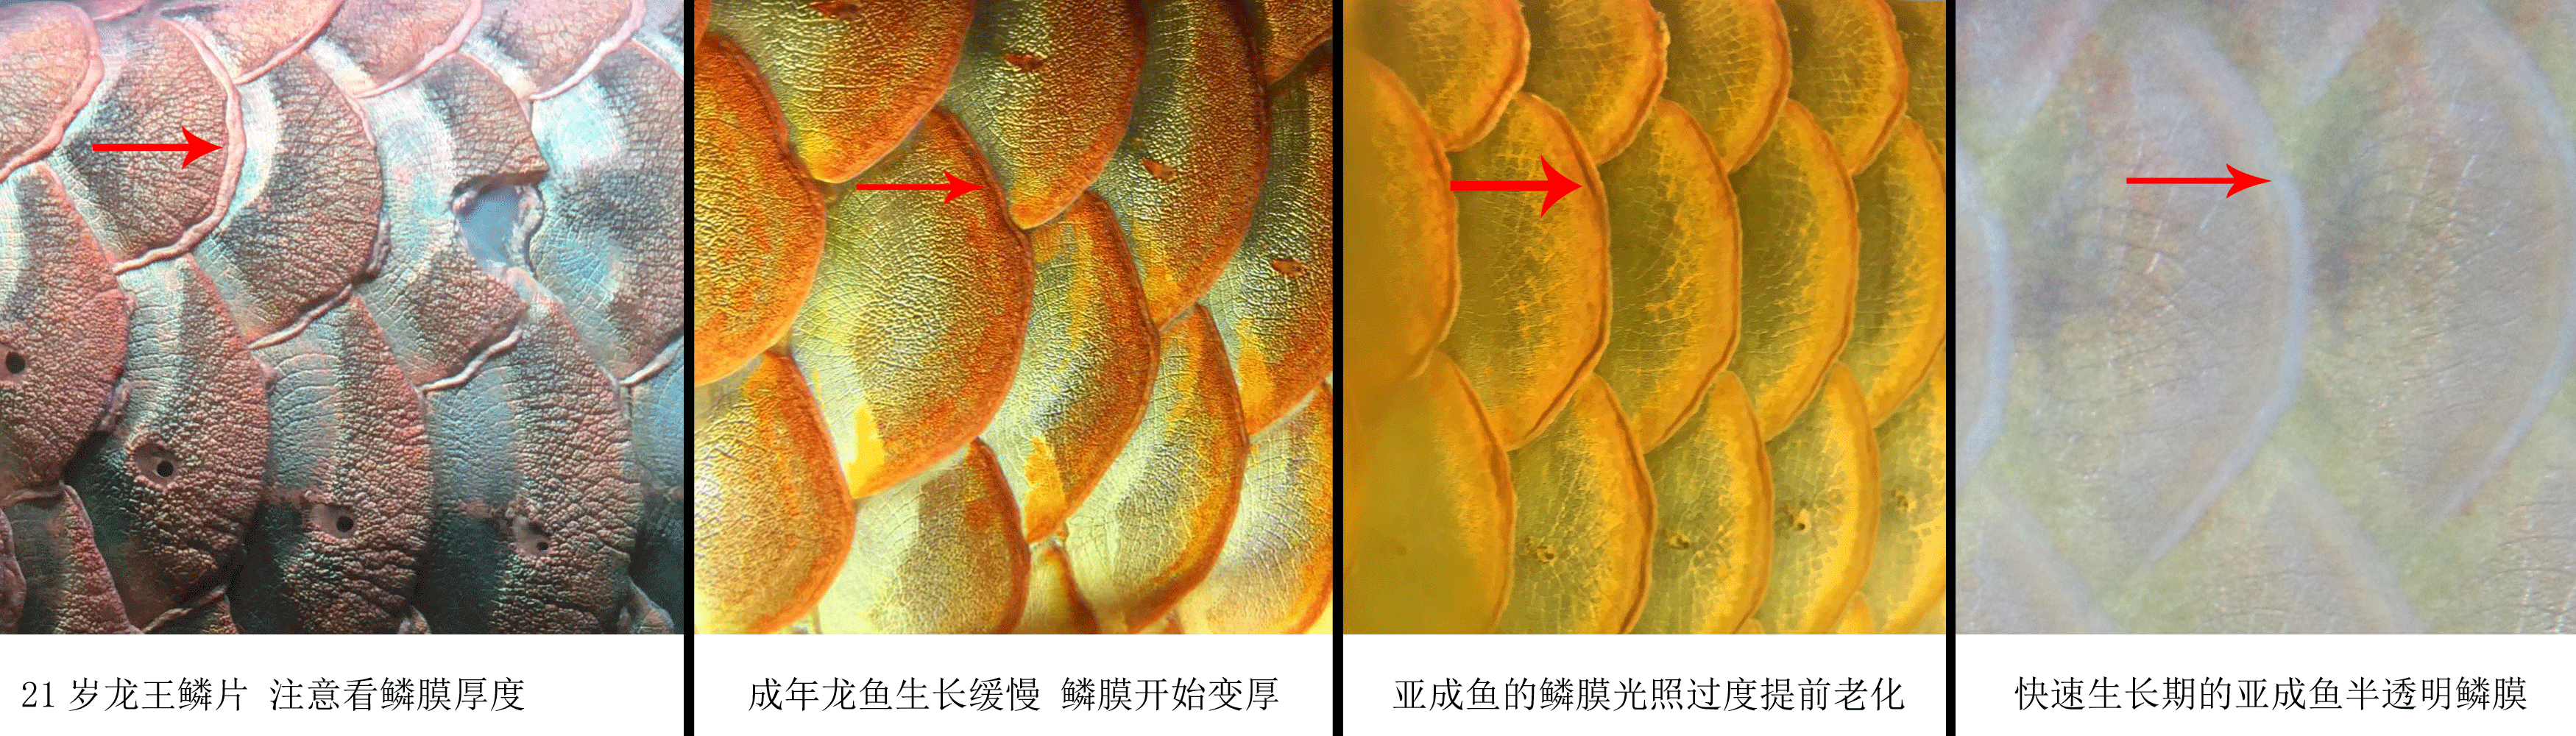 龙鱼鳞膜的表现与光照的关系